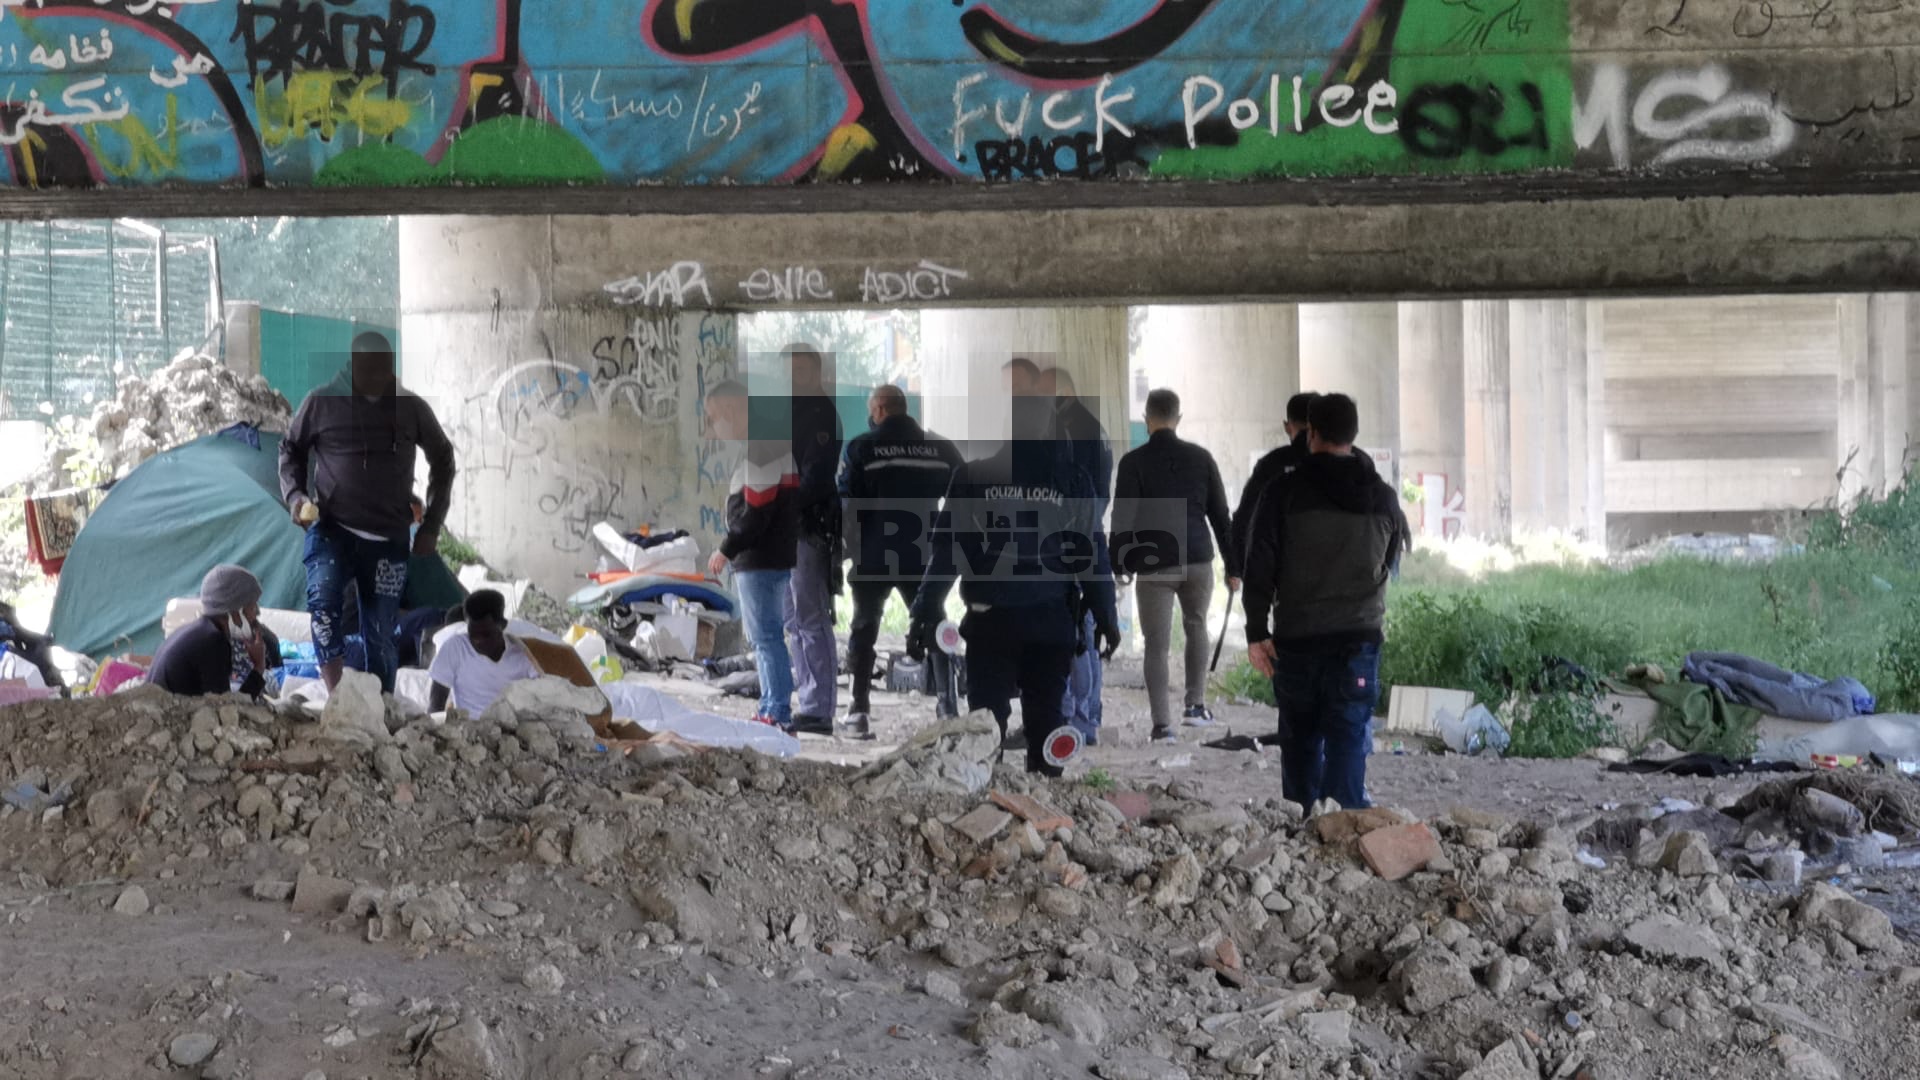 Migranti Ventimiglia campo accampamento tende Roya polizia